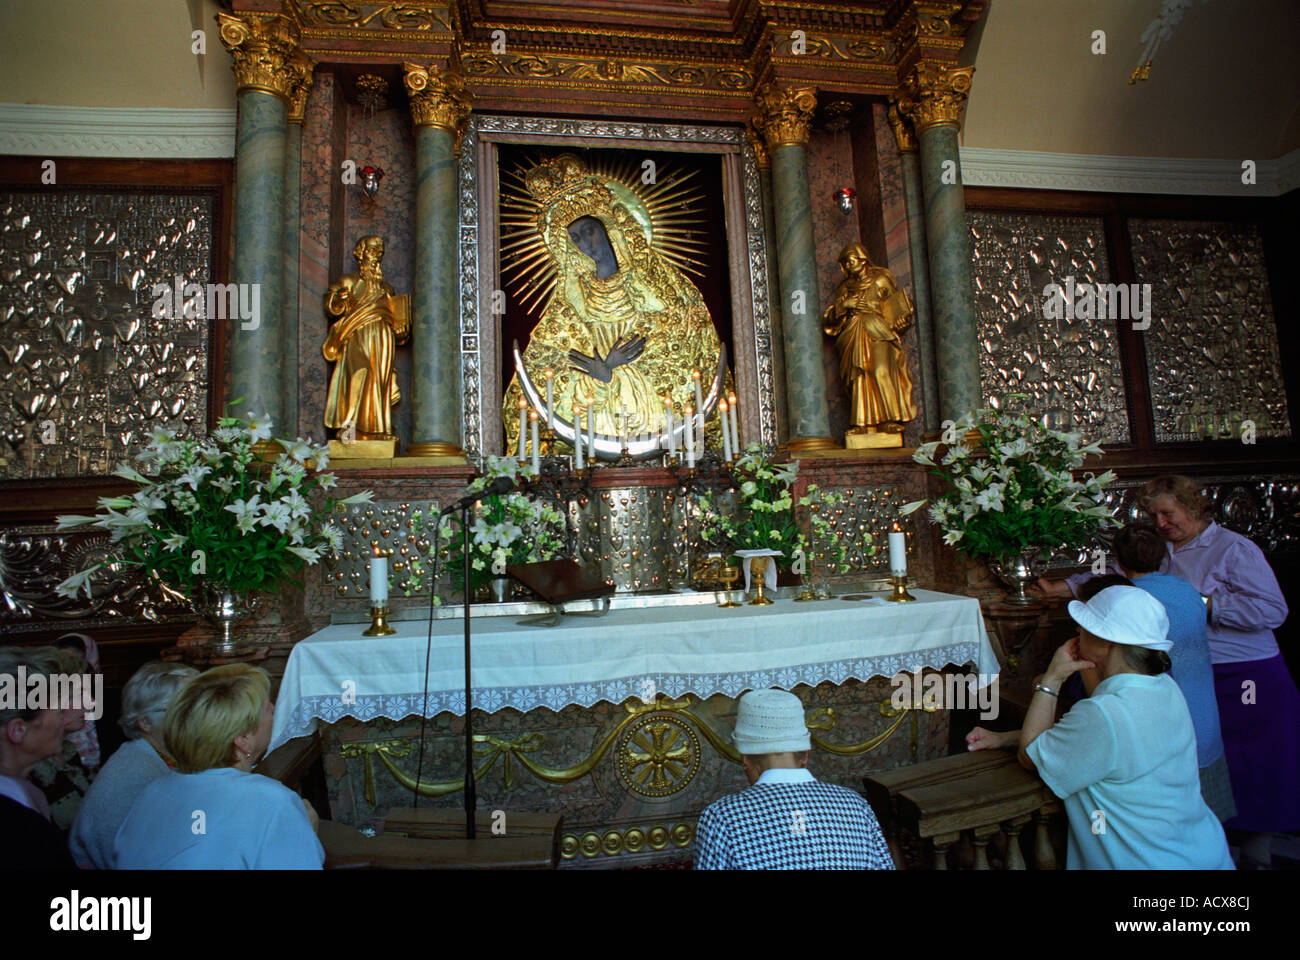 El altar con una imagen de la Virgen María en una capilla católica en Vilnius, Lituania Foto de stock